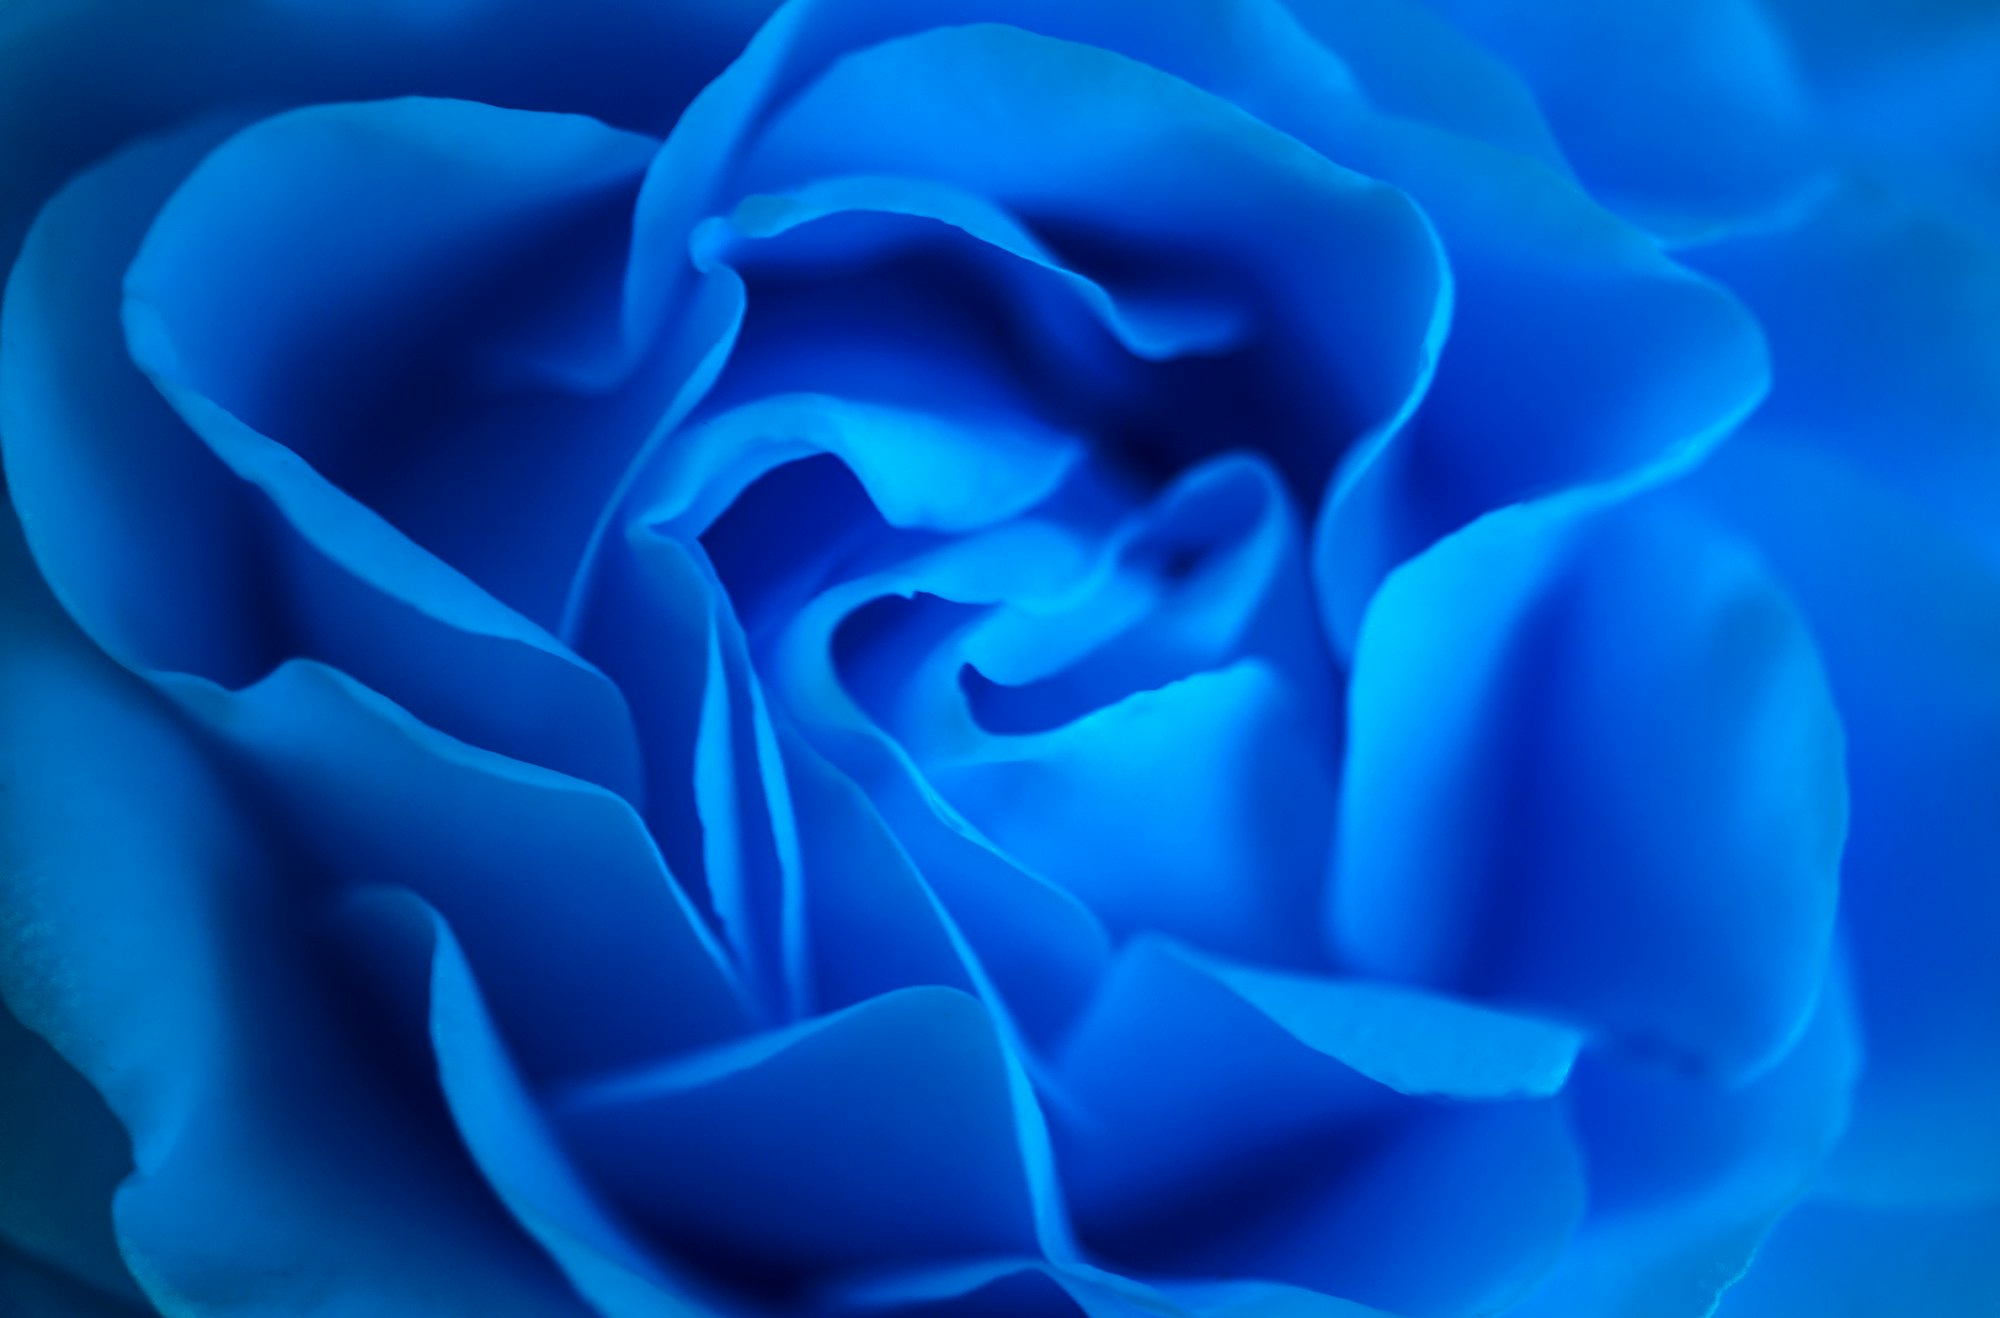 Rose blu stabilizzate: significato e a chi regalarle